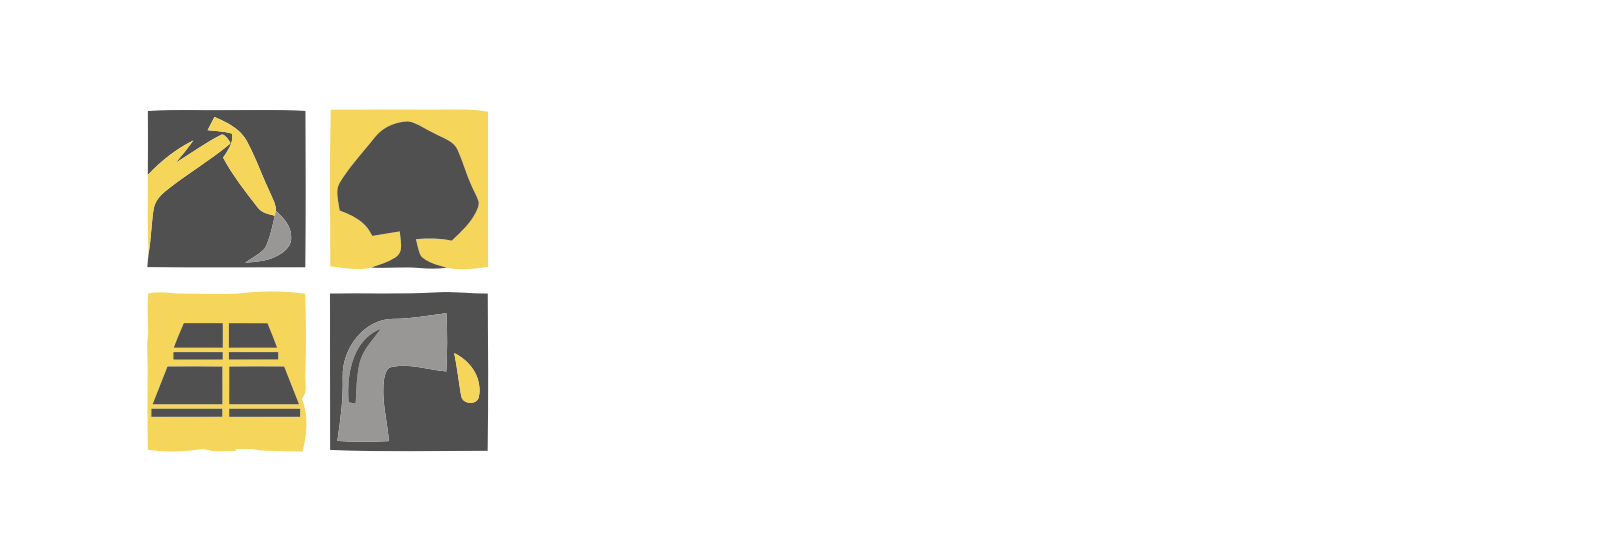 Jeroen van Steenis